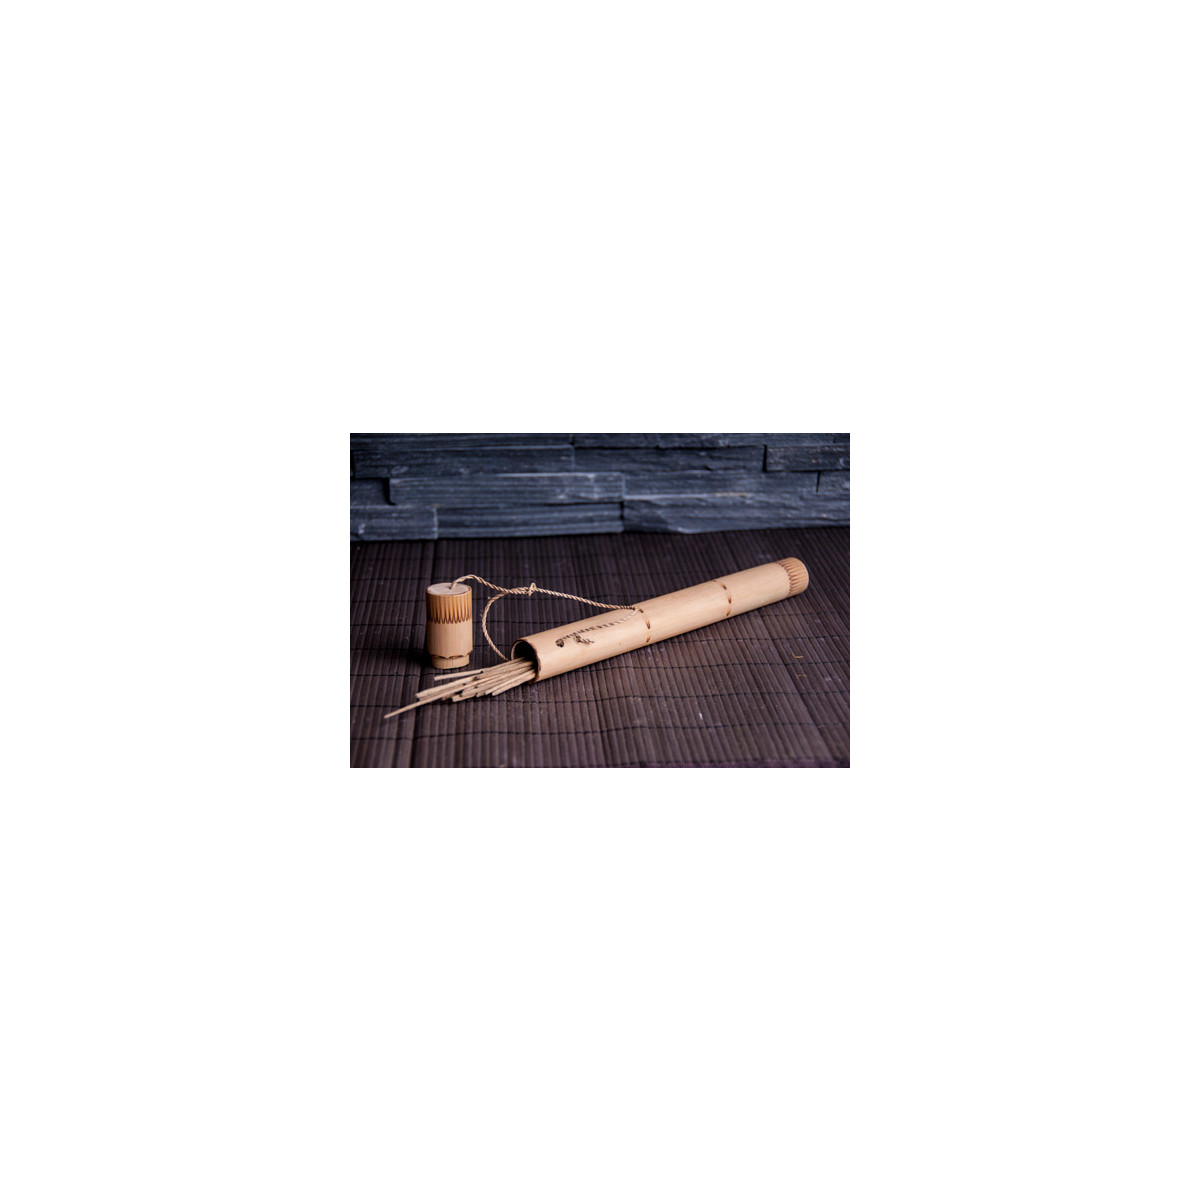 Motiv für Rücherstäbchen (Bambus)